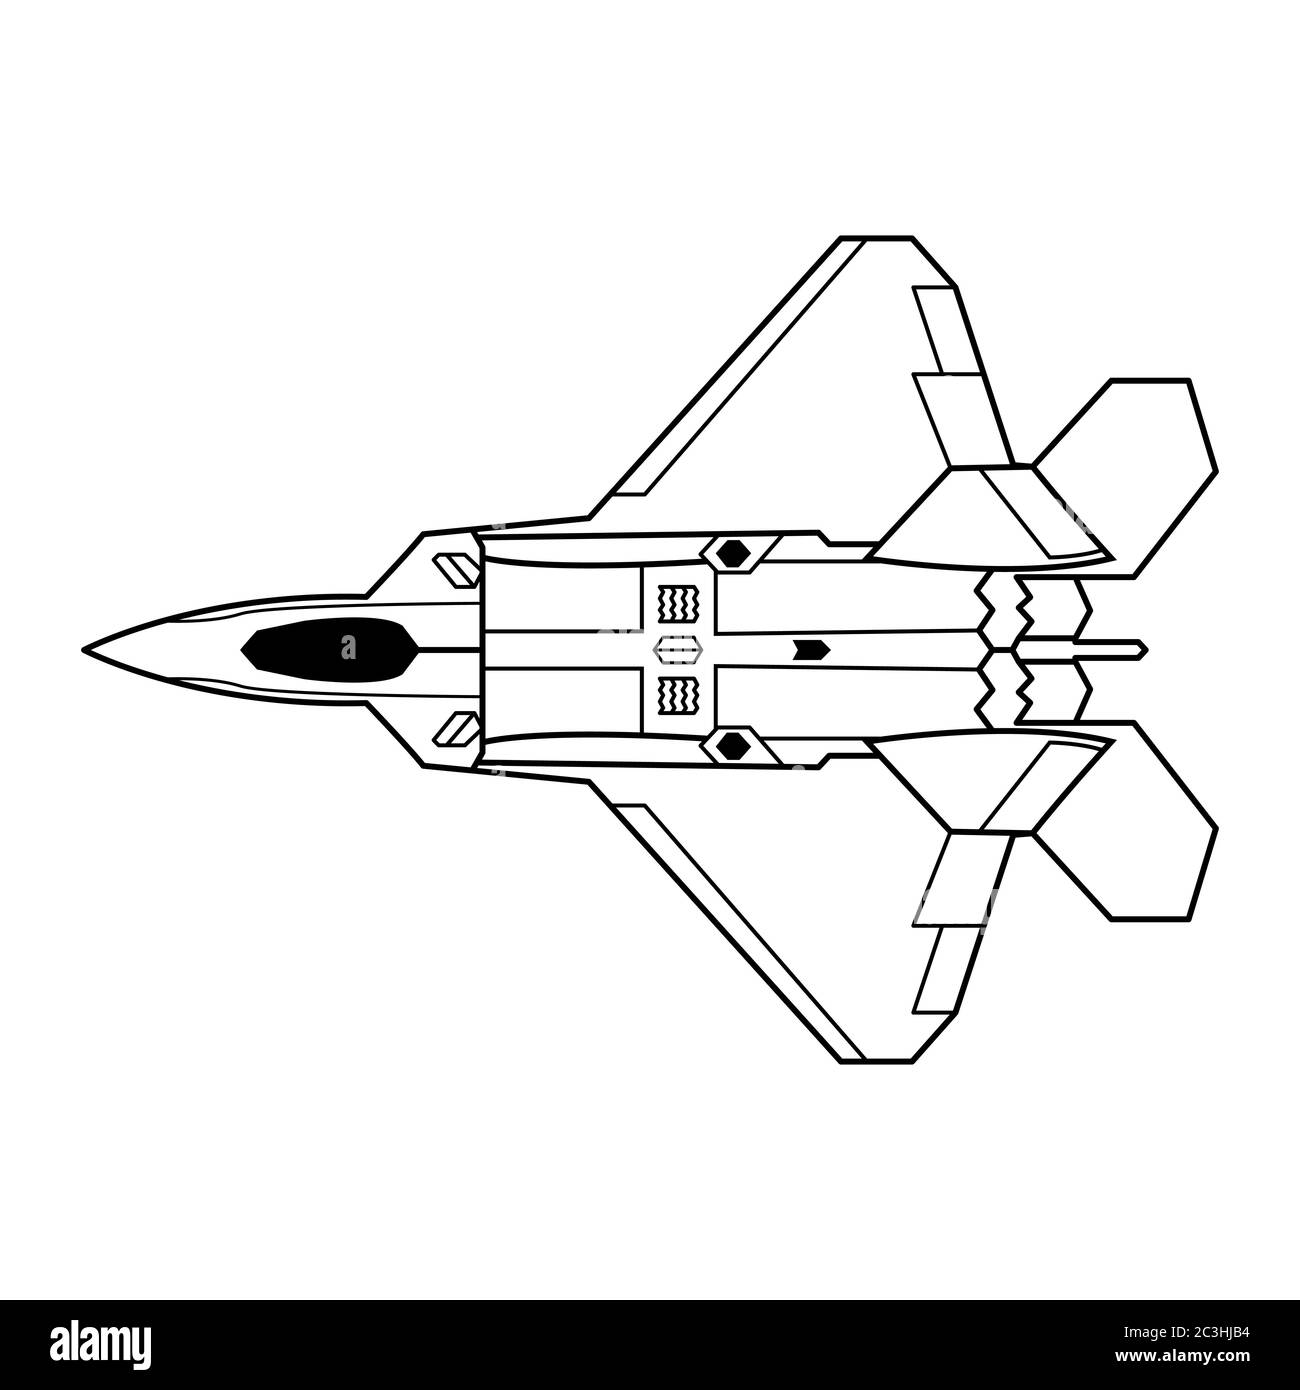 American fighter F-22 Raptor vector illustration. Stock Vector